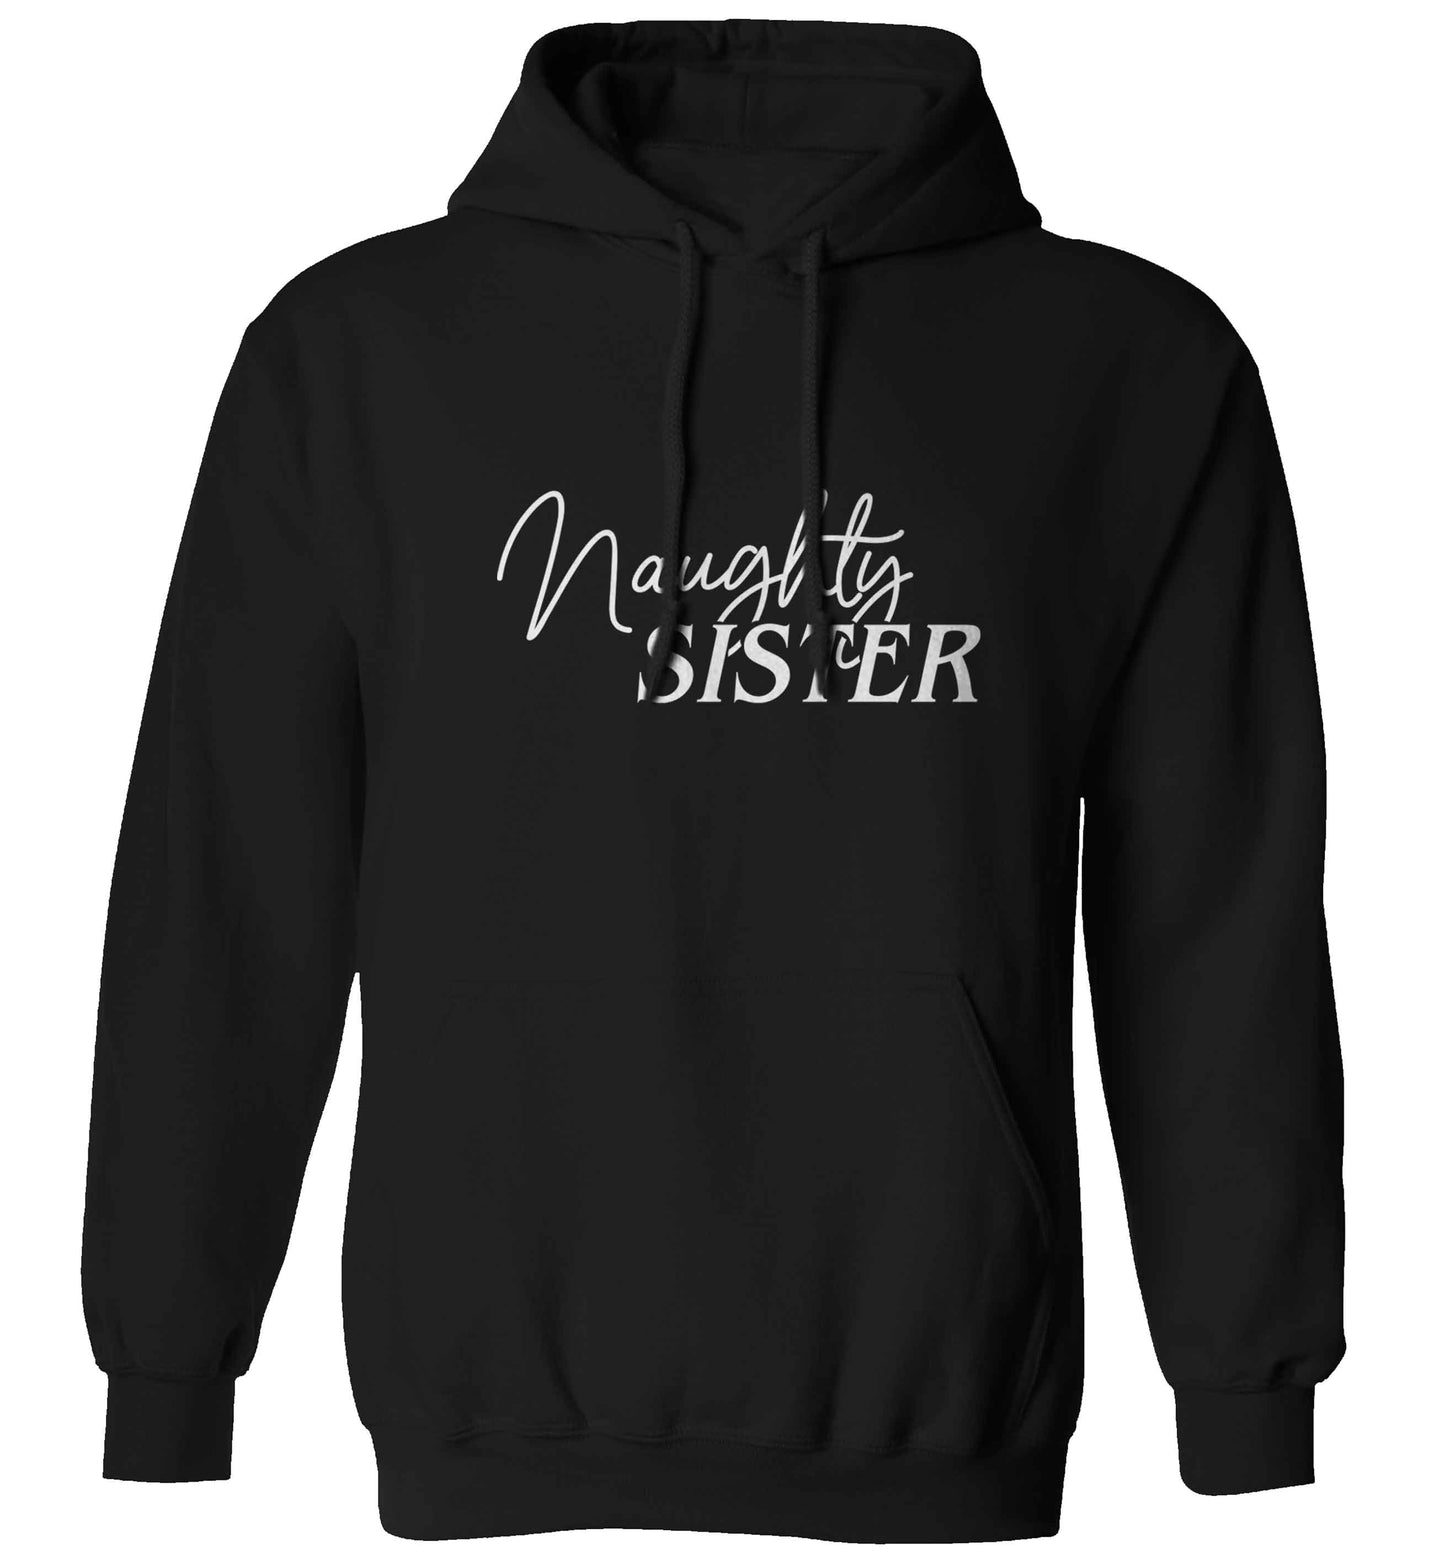 Naughty Sister adults unisex black hoodie 2XL